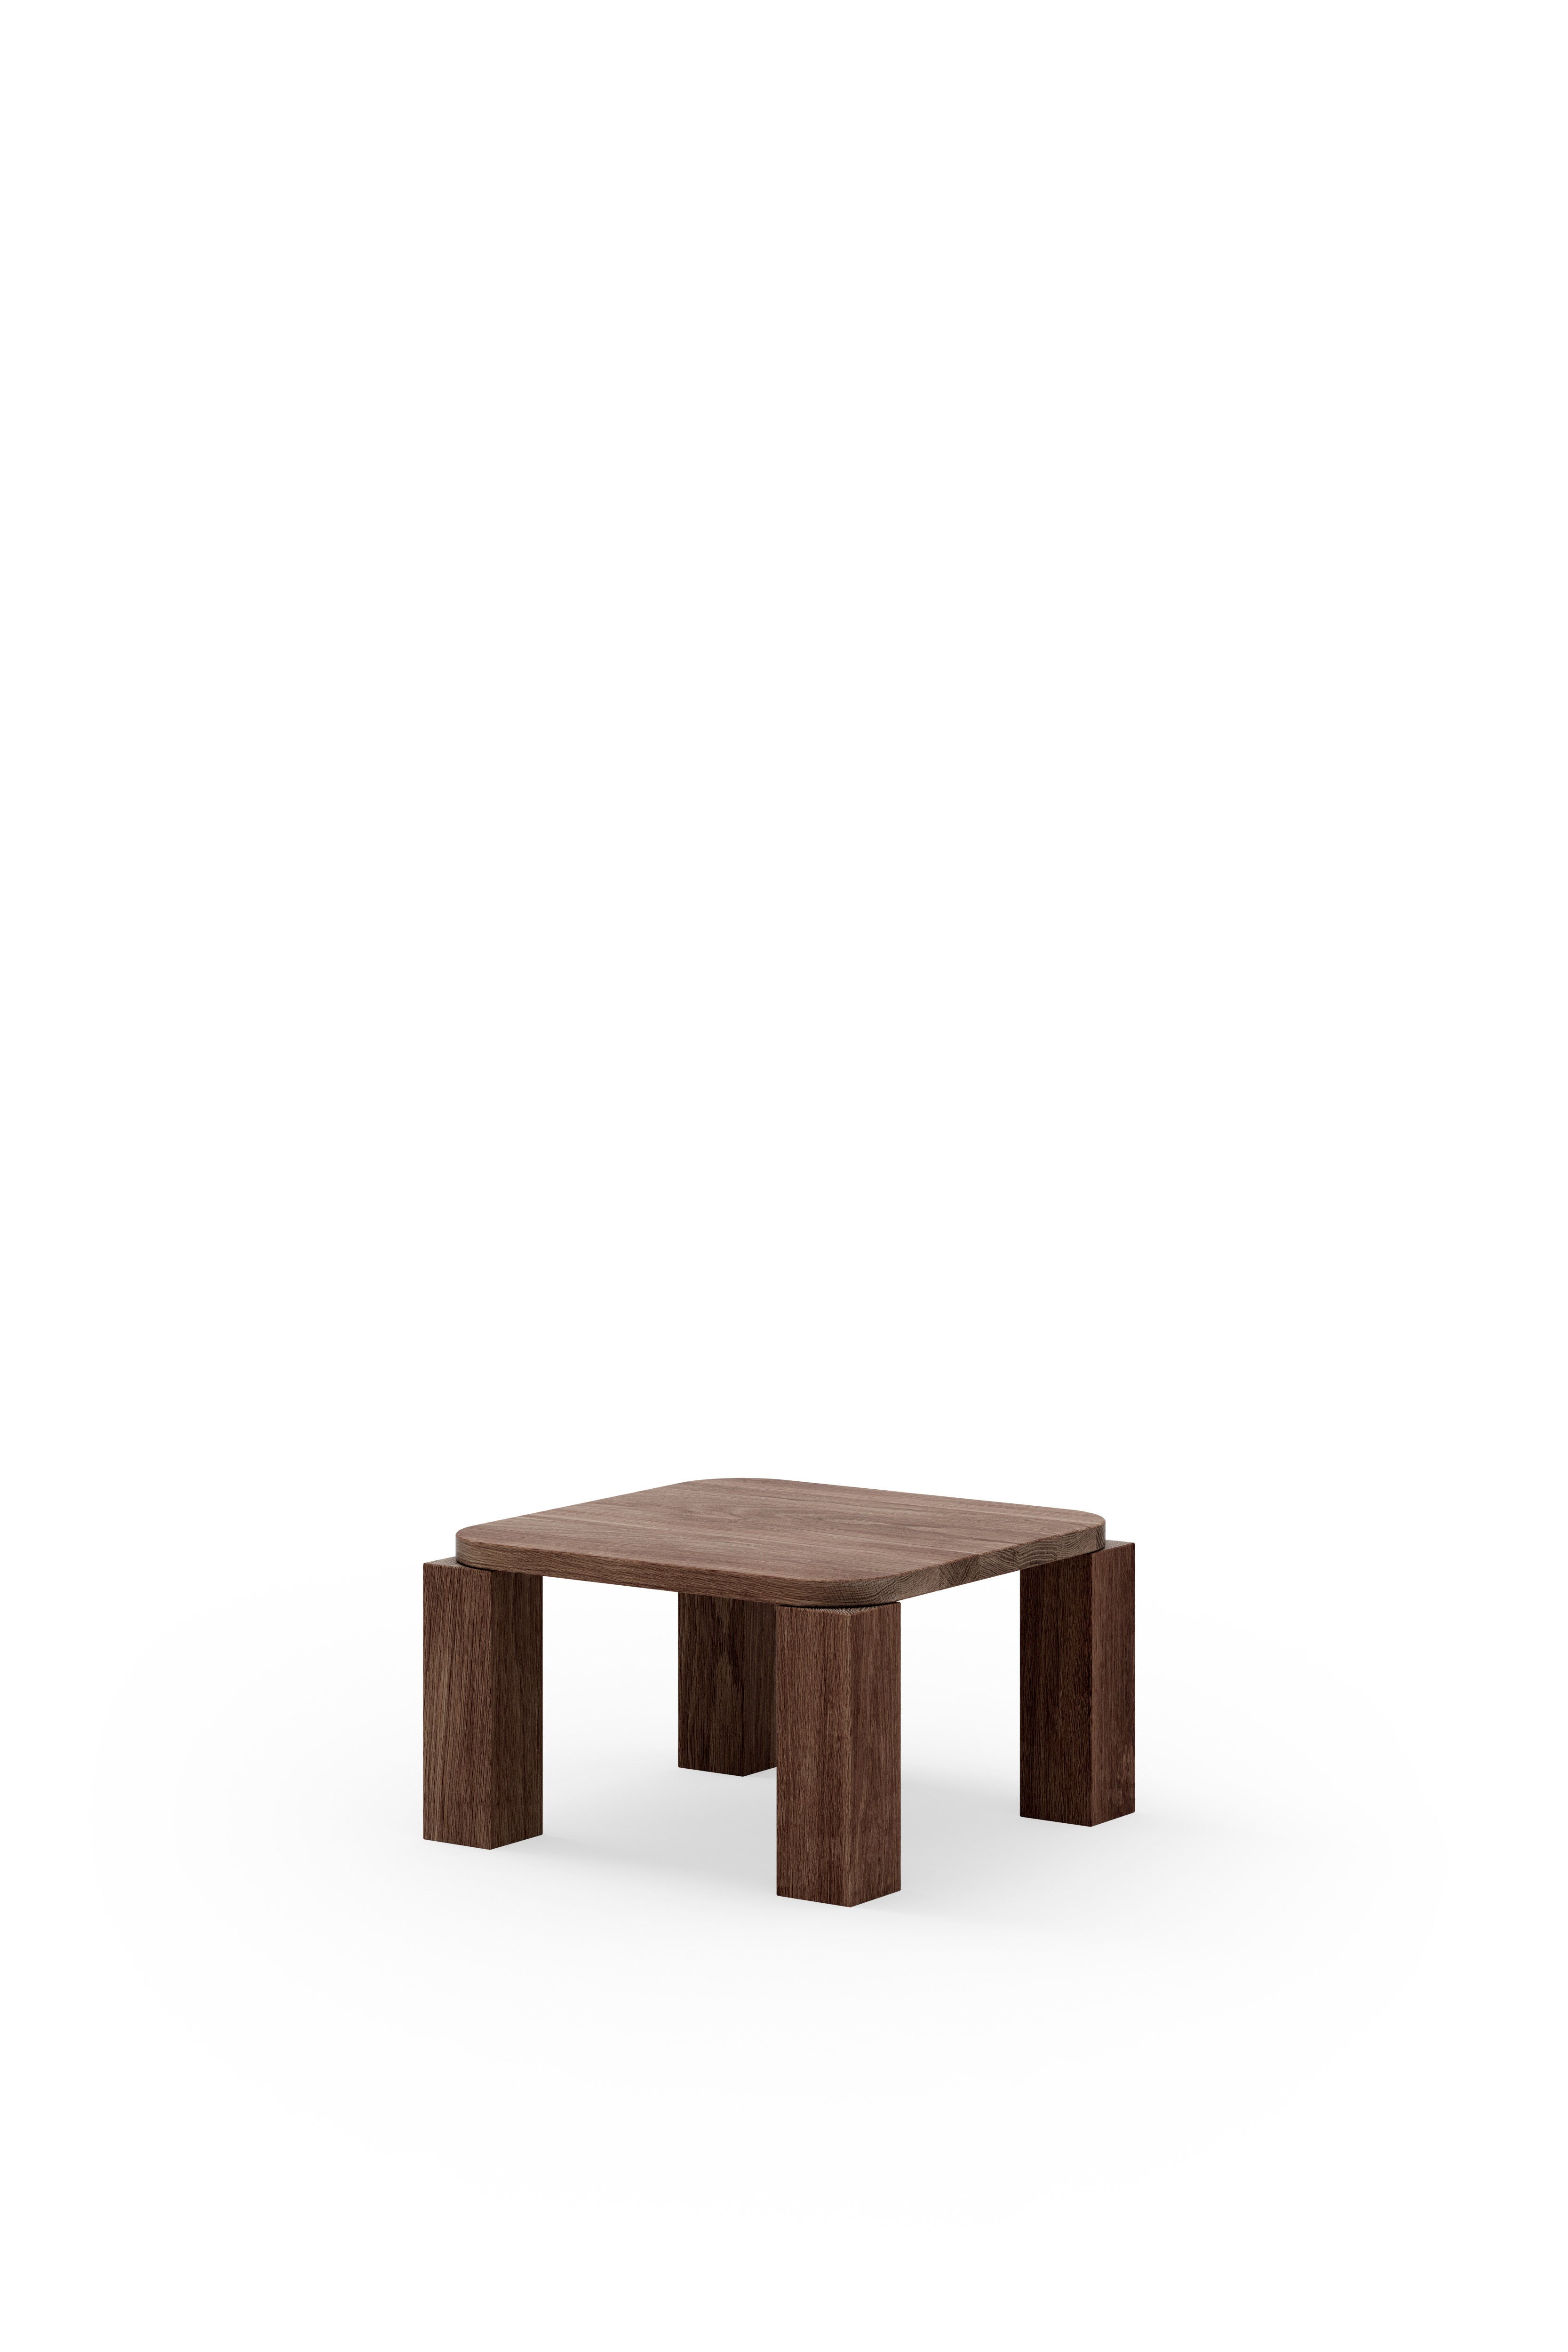 New Works Atlas Coffee Table Fumed Oak, 60x60 Cm